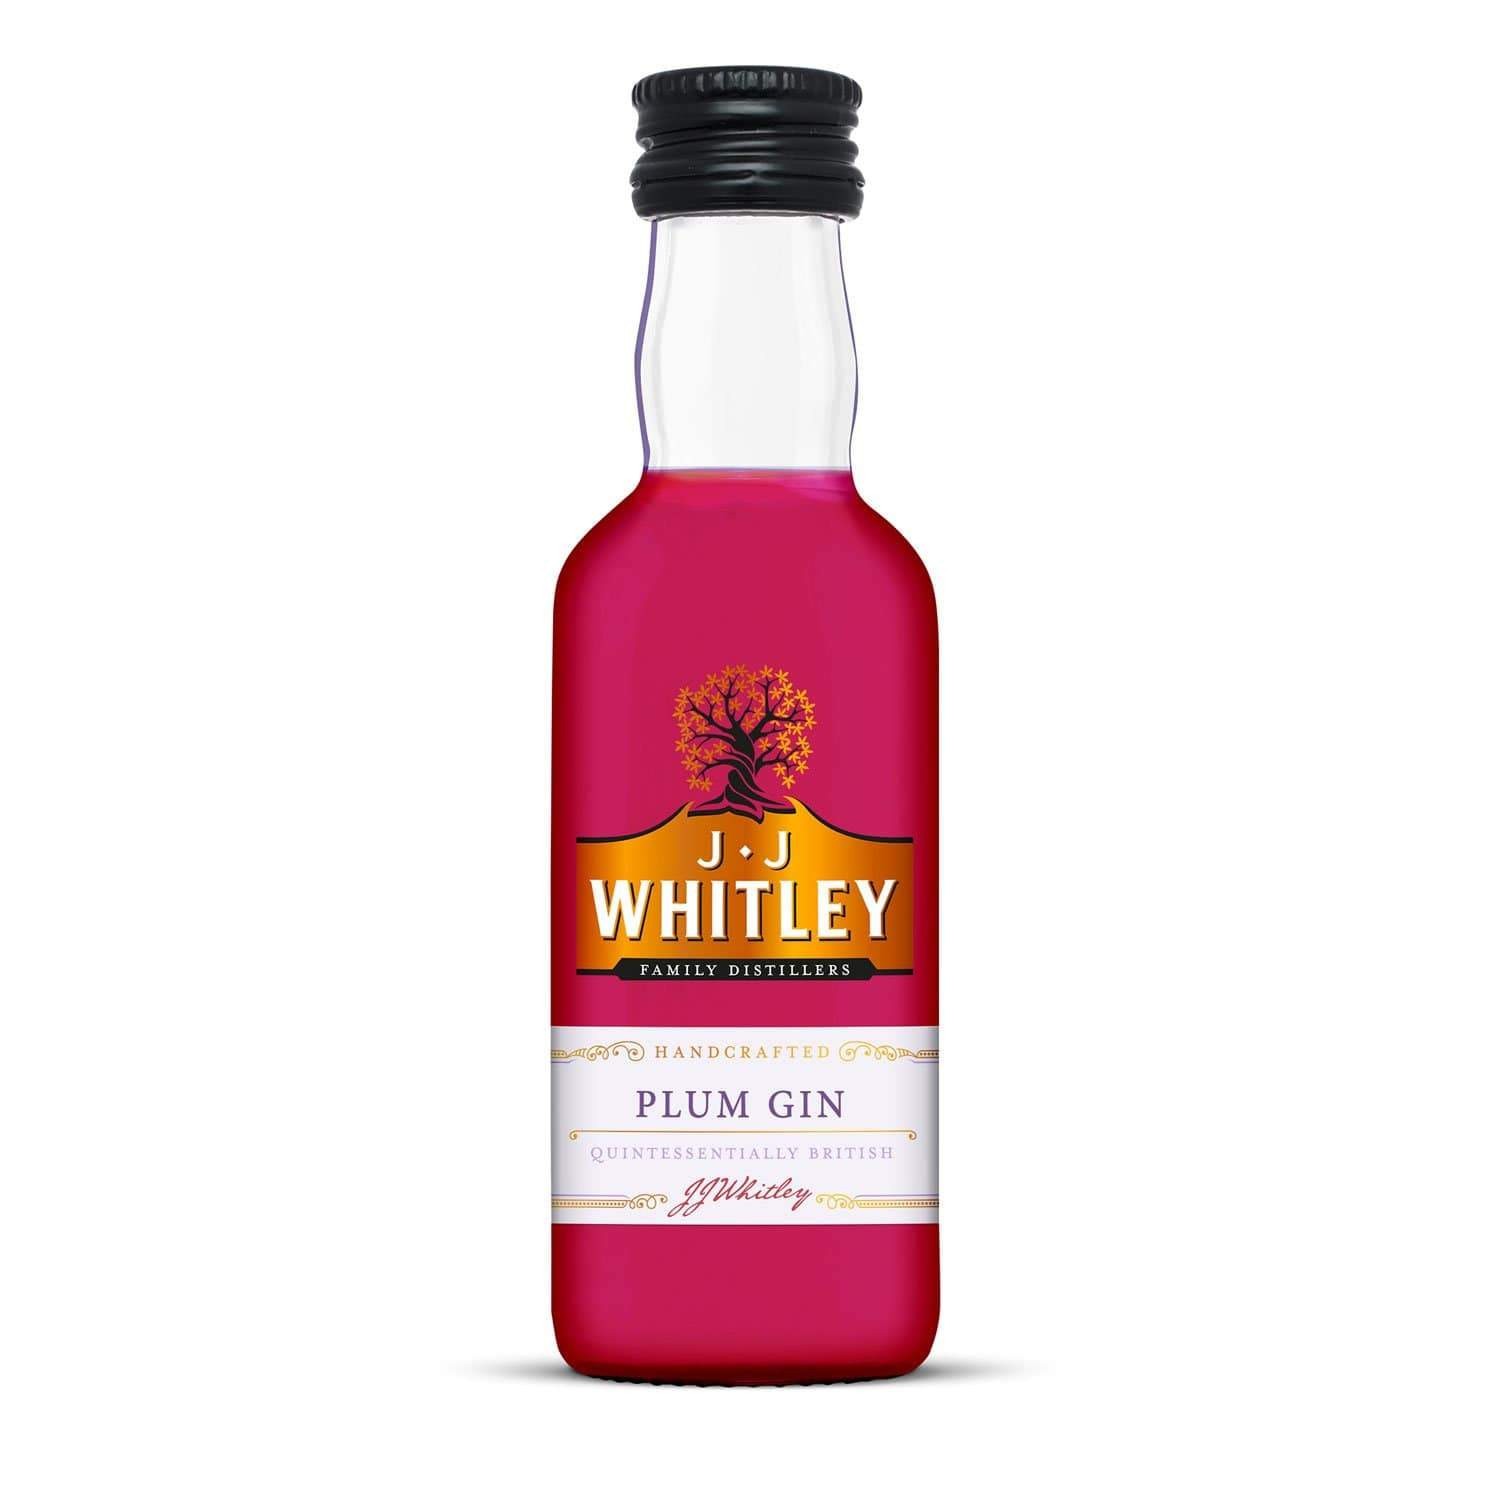 Gin Jj Whitley, Prune, Plum Gin, 38.6% Alcool, Miniatura, 0.05 l